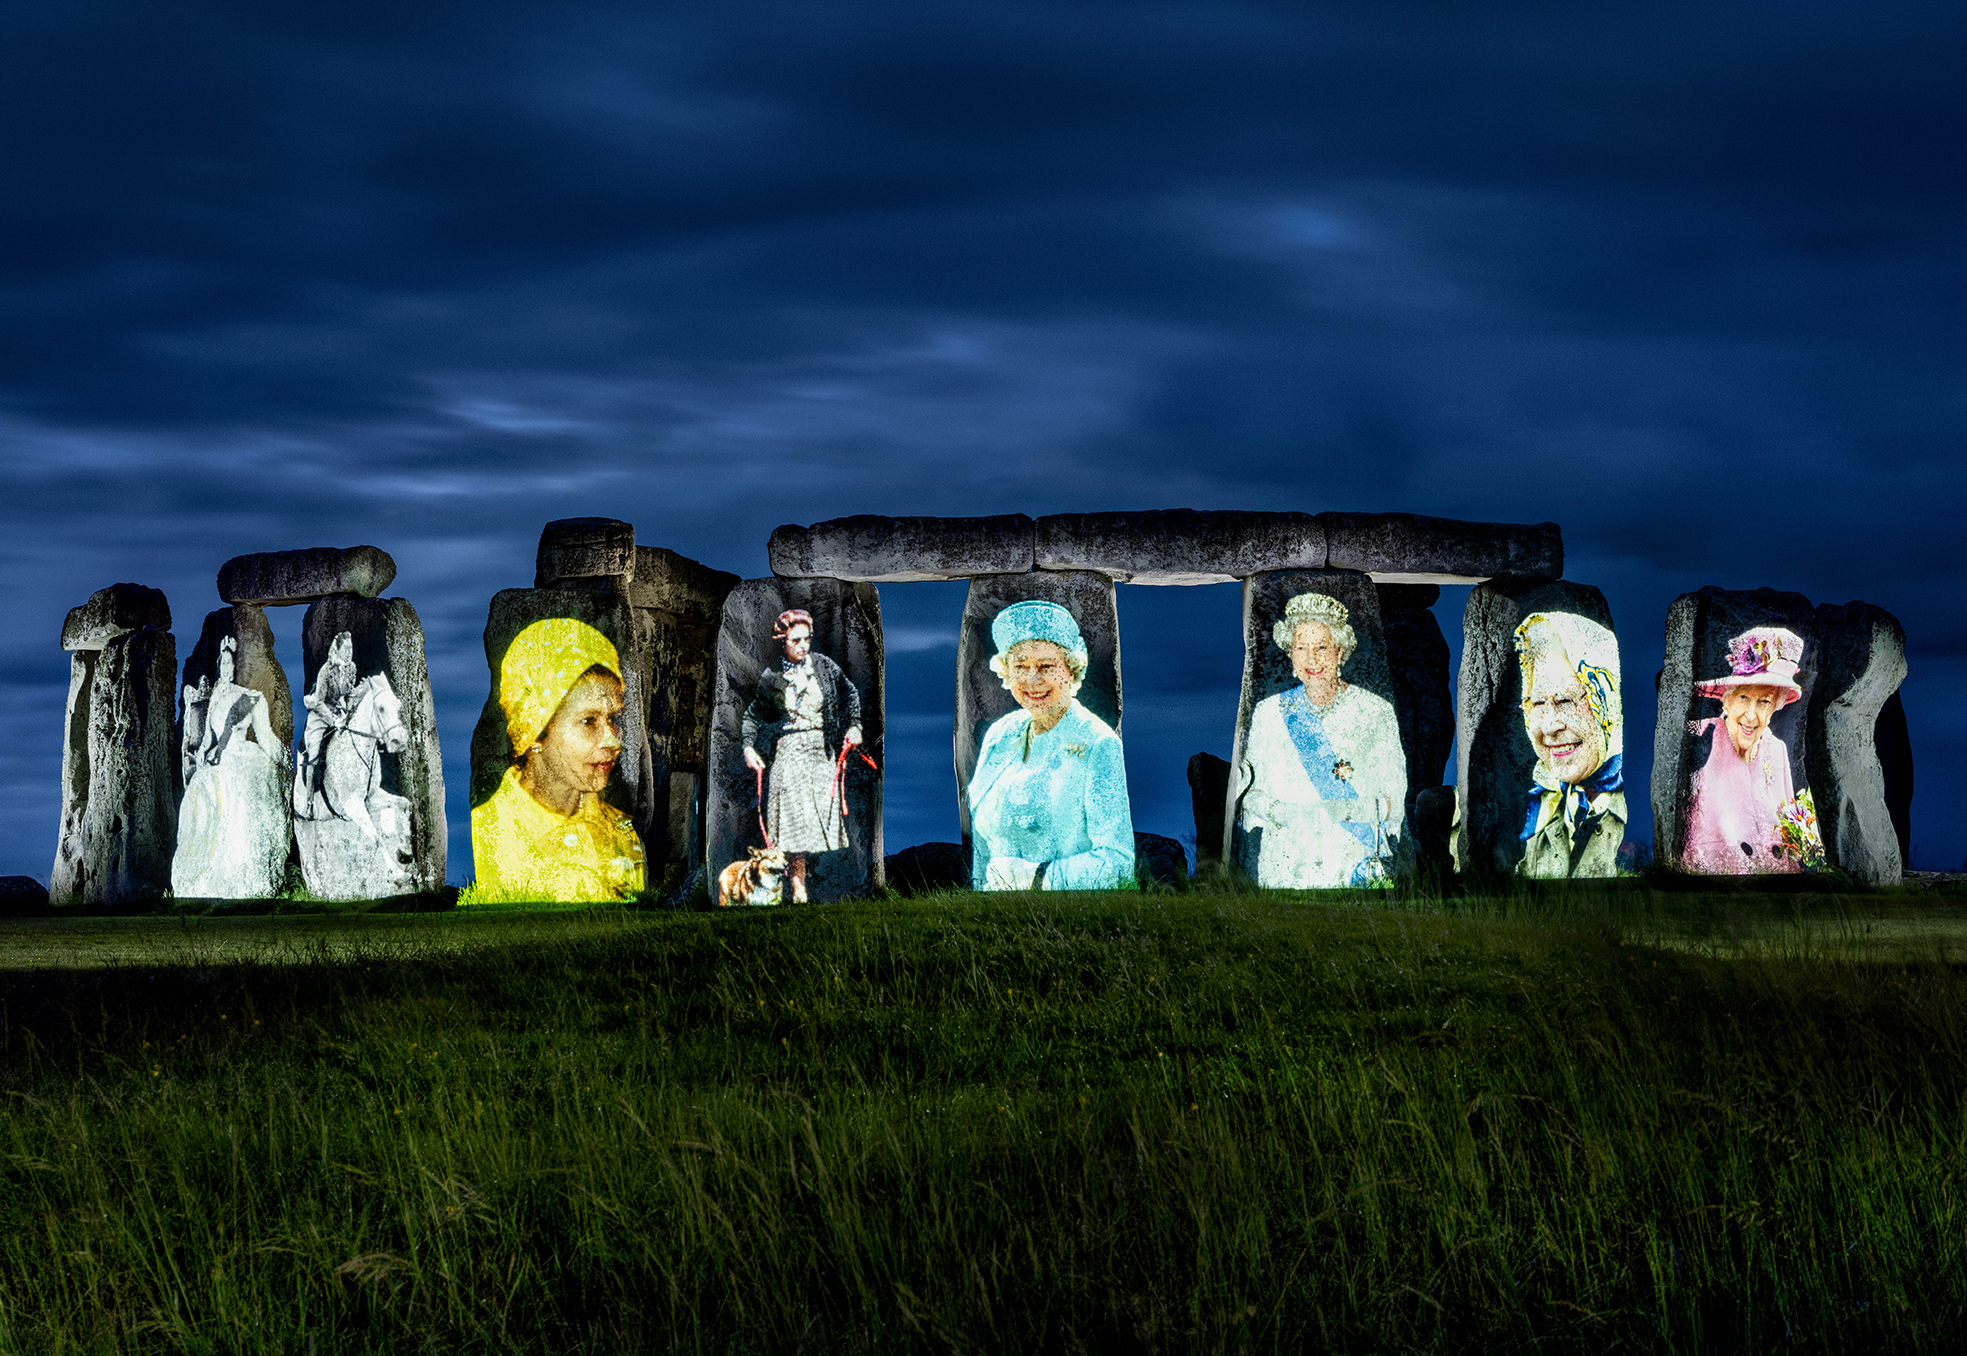 Queen Elizabeth projected onto stonehenge